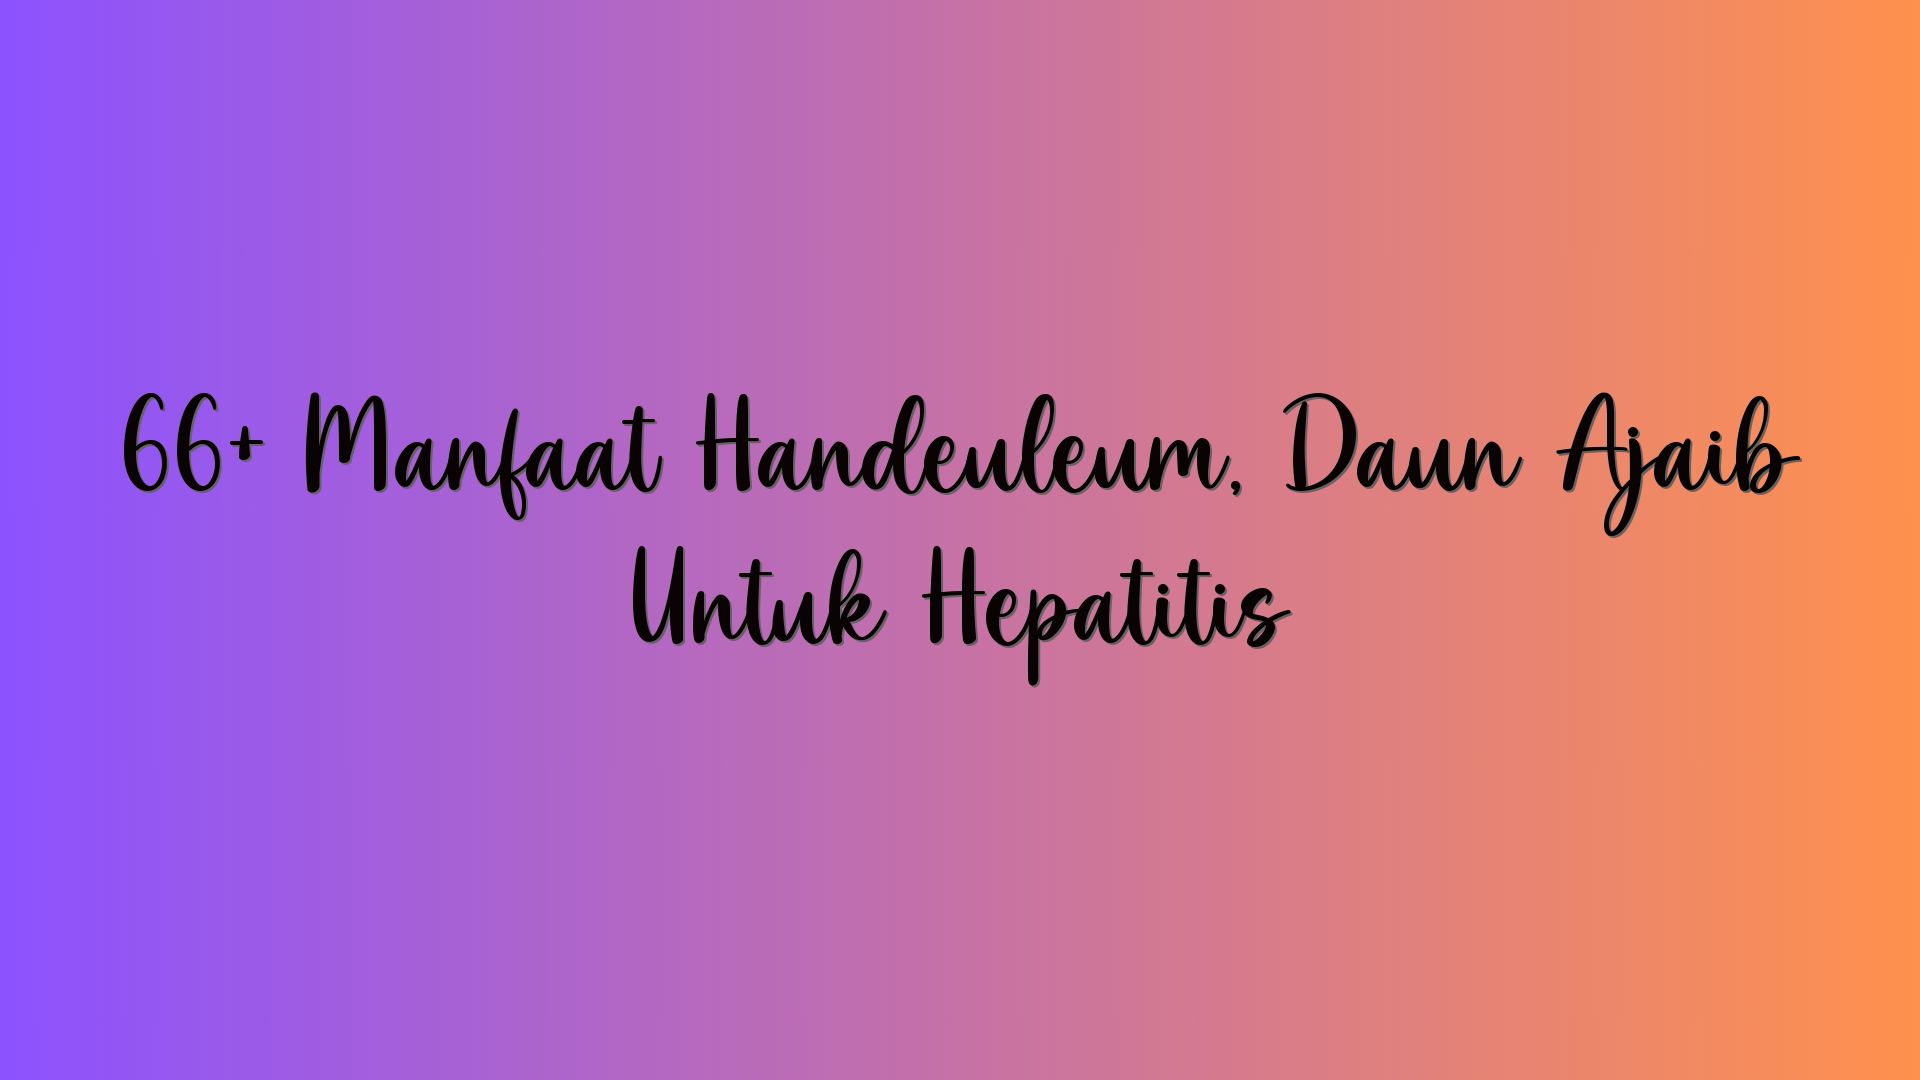 66+ Manfaat Handeuleum, Daun Ajaib Untuk Hepatitis